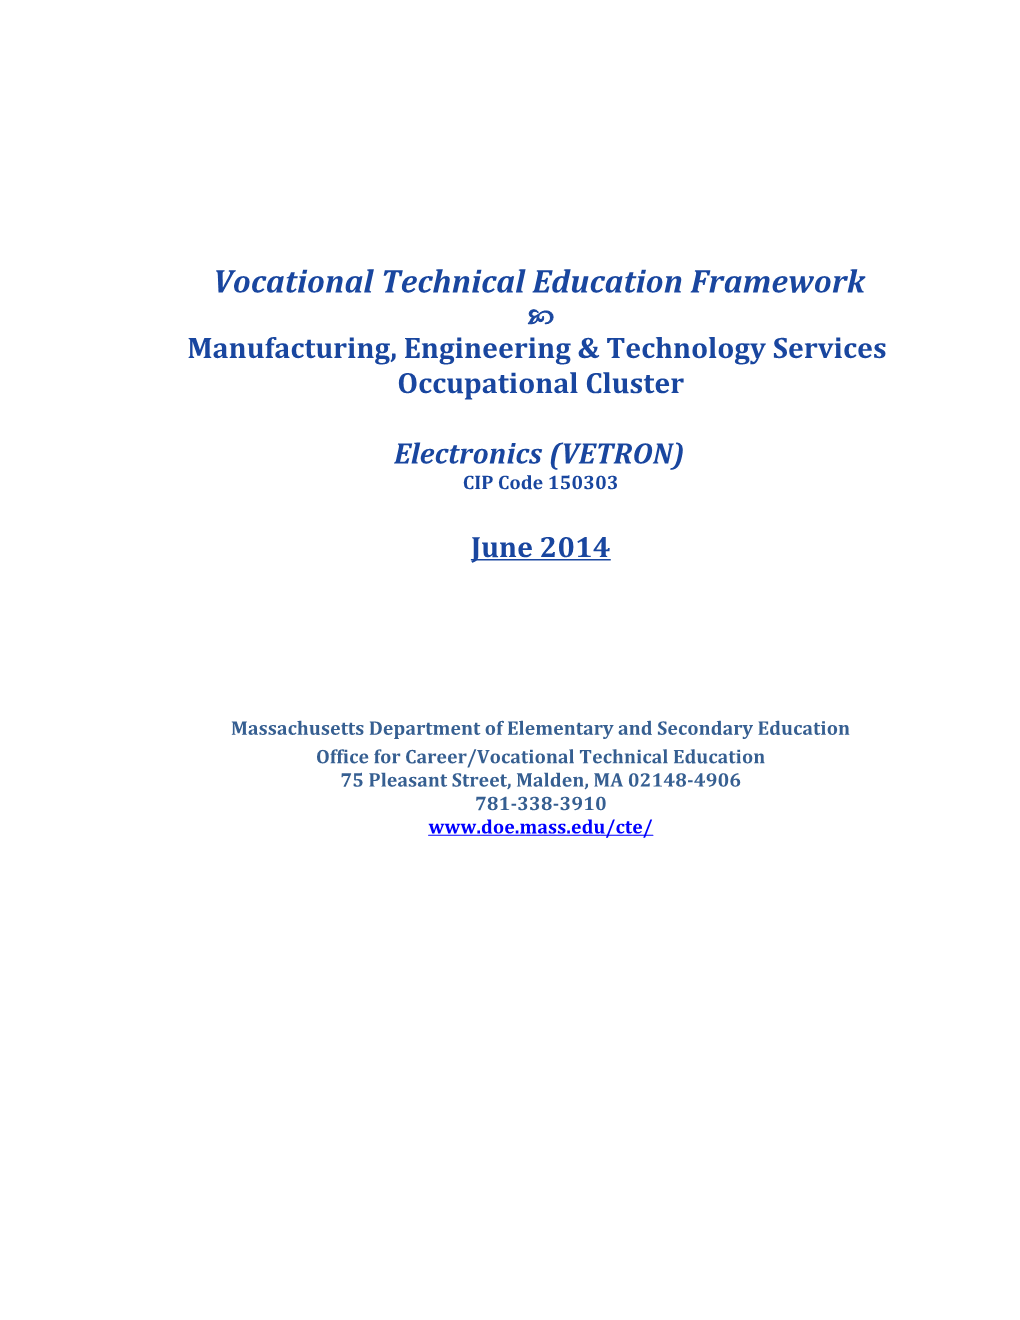 VTE Frameworks: Electronics